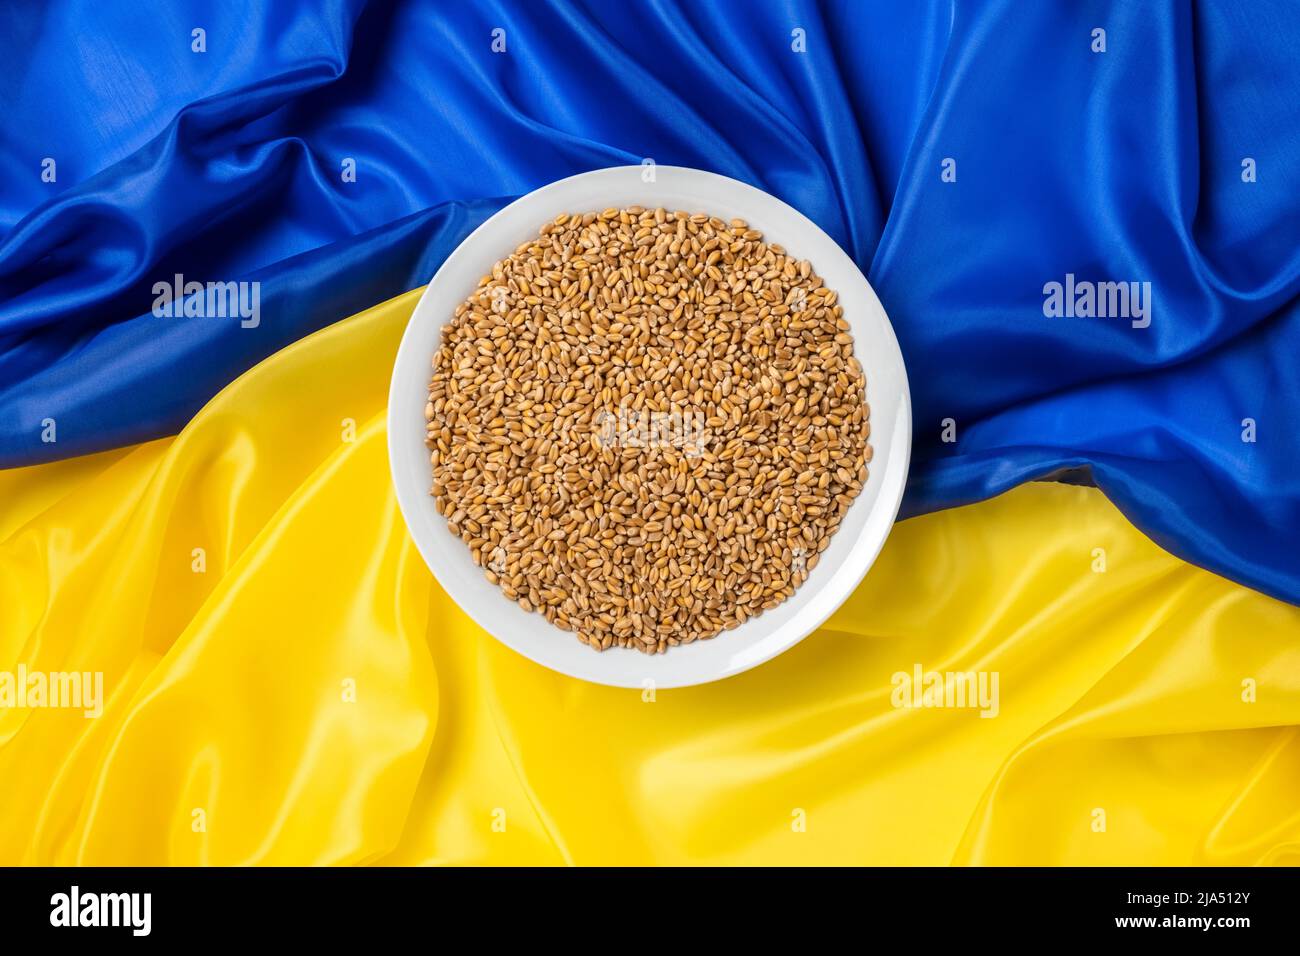 Weizenkörner in Schale oder Teller auf gelber und blauer ukrainischer Flagge als Hintergrund. Konzept der Nahrungsmittelversorgungskrise und der globalen Nahrungsmittelknappheit wegen des Krieges Stockfoto